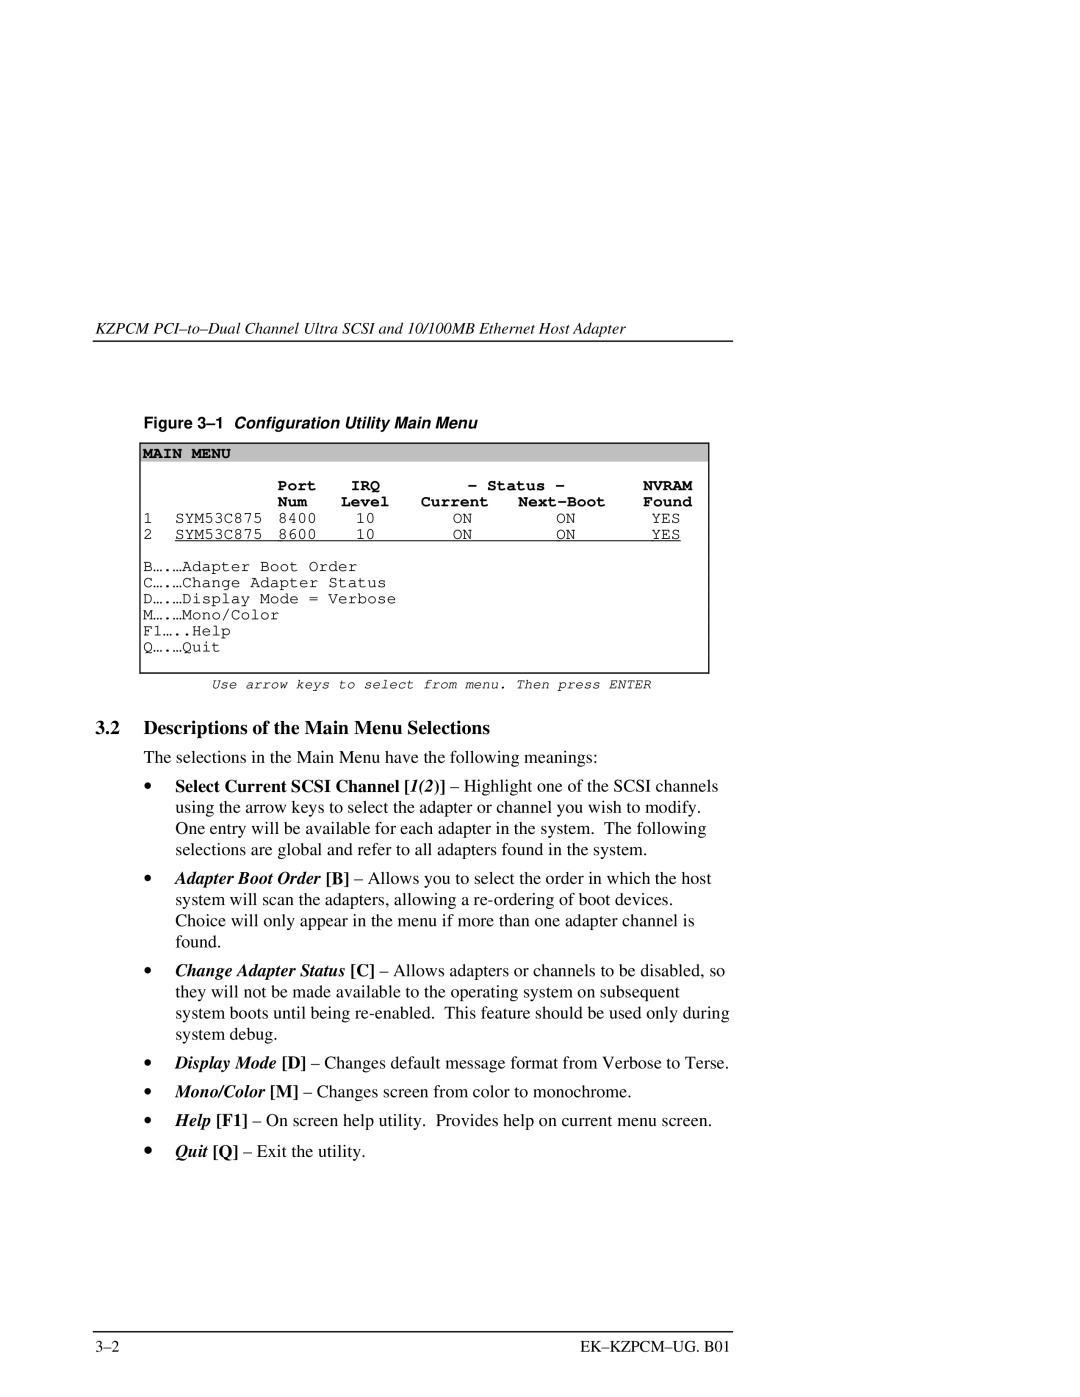 Intel EK-KZPCM-UG manual Descriptions of the Main Menu Selections 